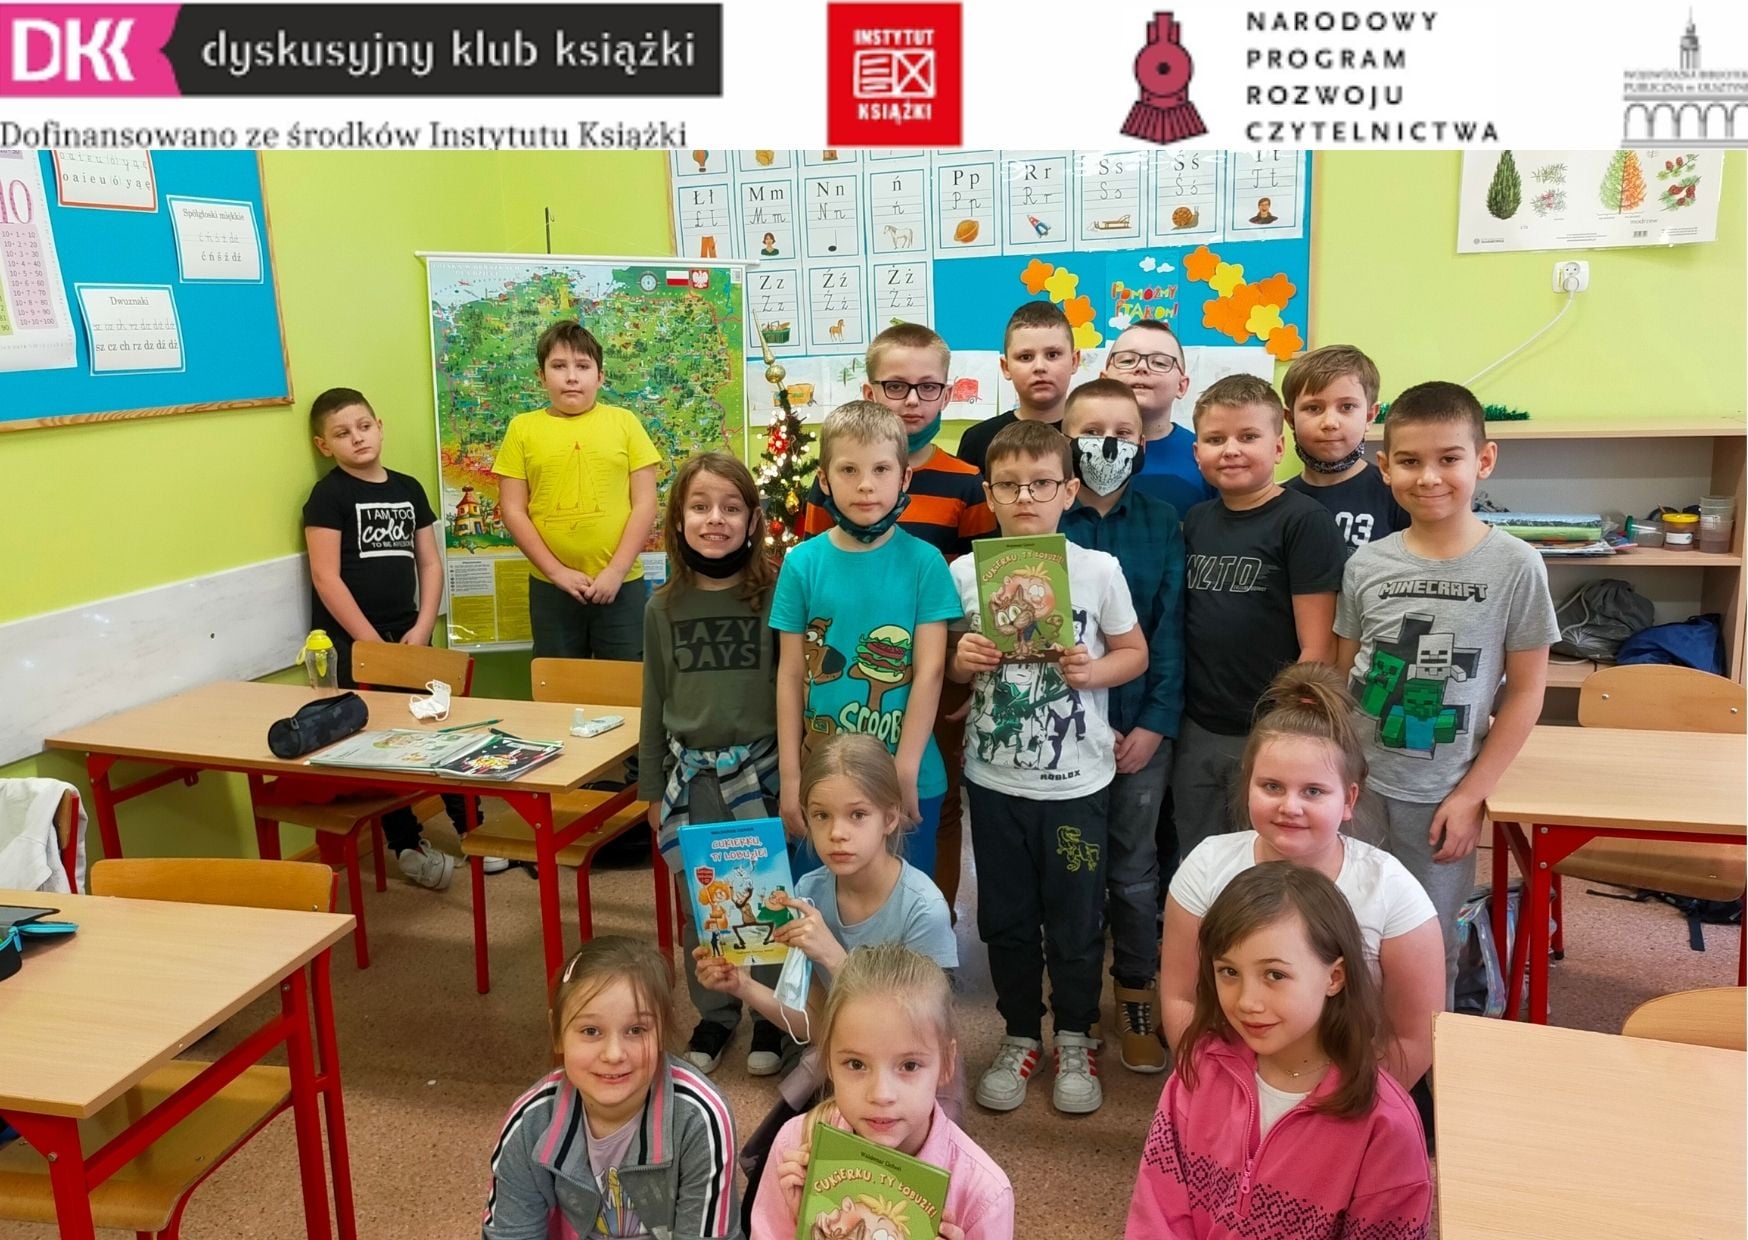 17 uczniów klasy 2b w sali lekcyjnej, troje z nich trzyma omawianą na spotkaniu DKK książką